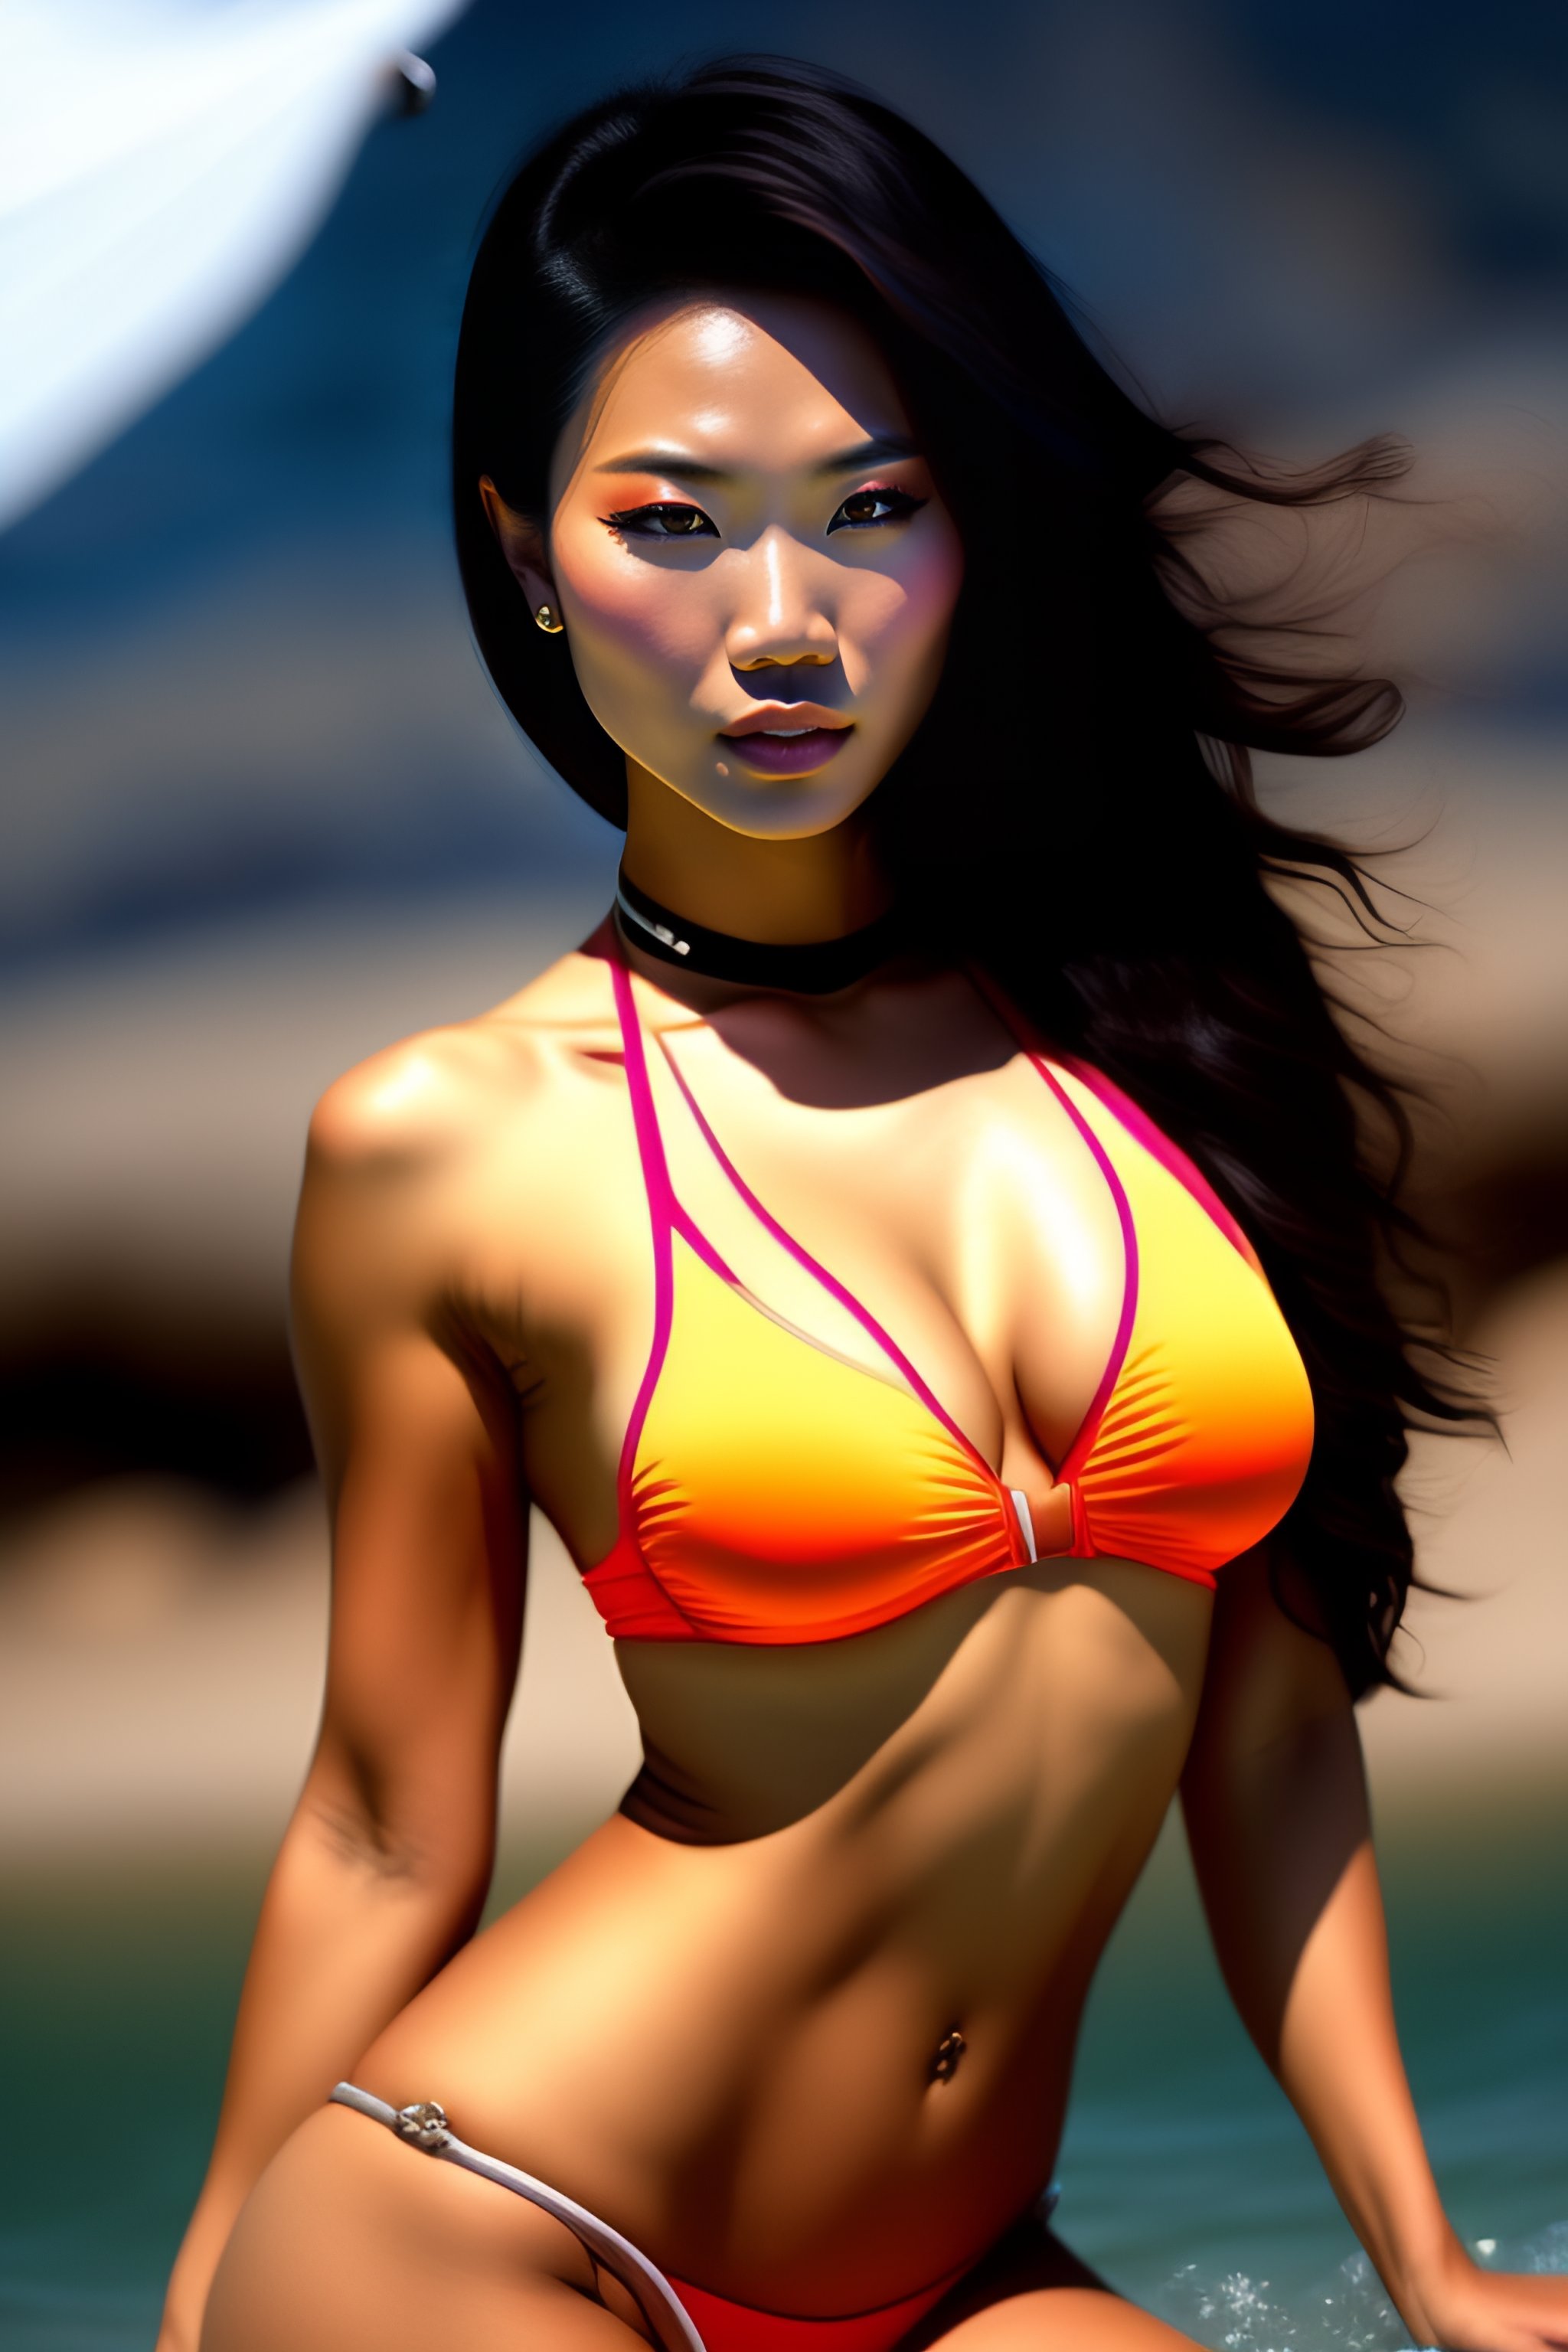 Best of Asian models in bikinis